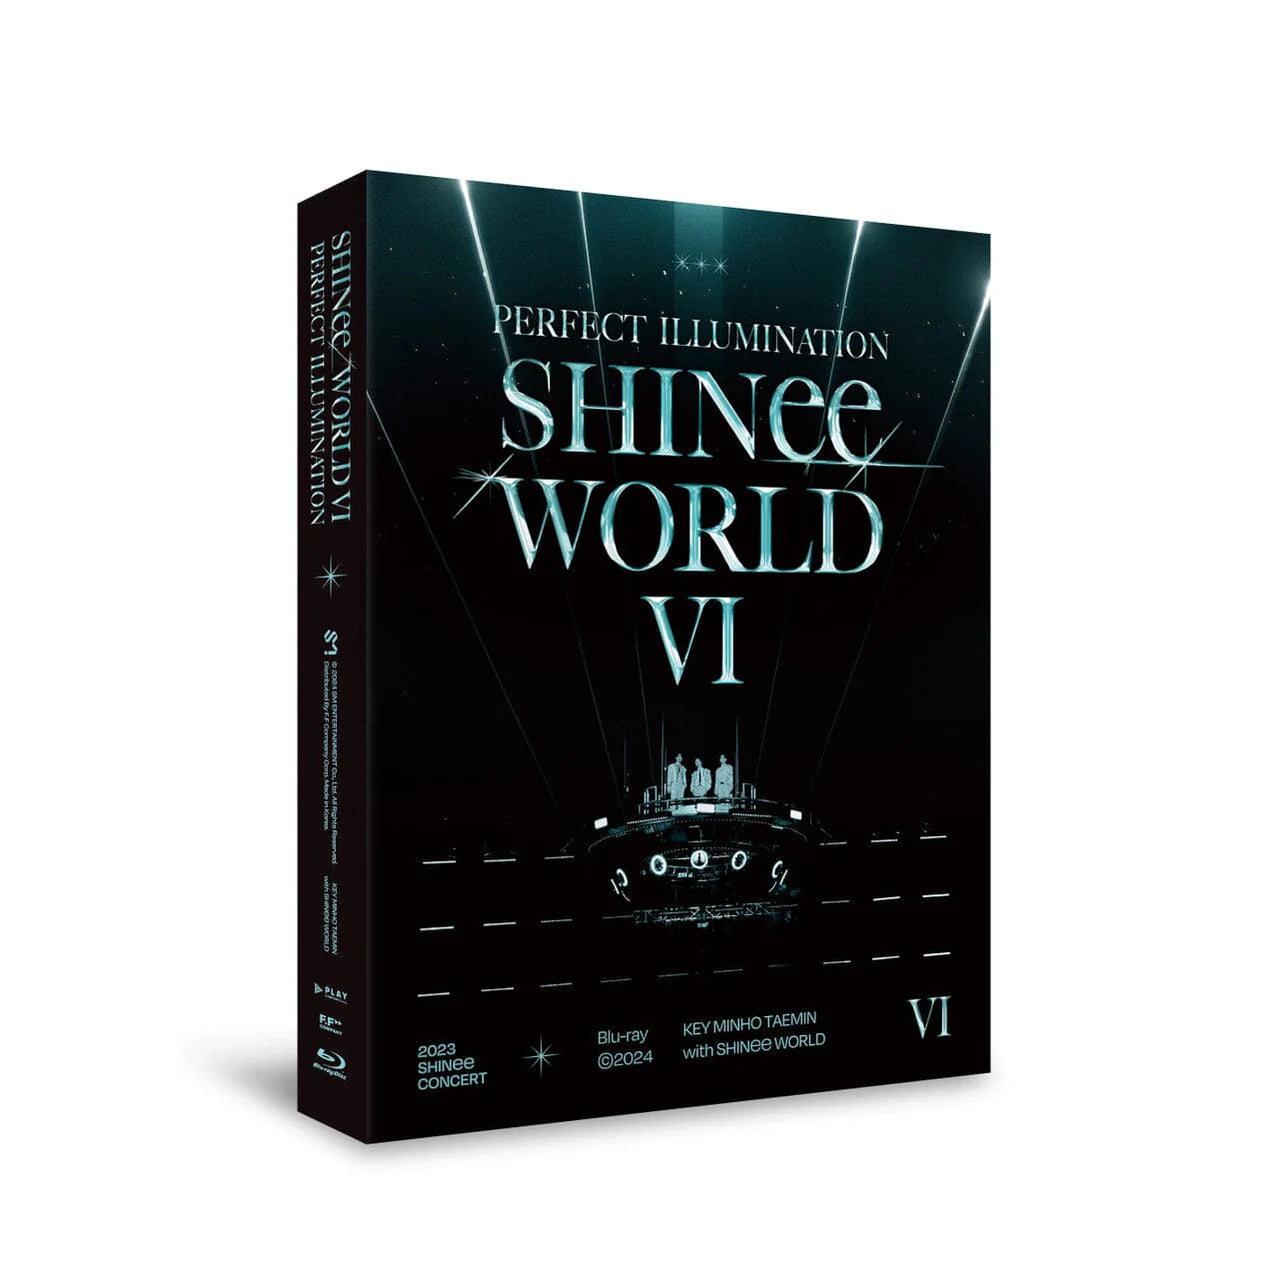 shinee-shinee-world-vi-perfect-illumination-in-seoul-dvd-blu-ray-nolae-124545_1279x1279.webp__PID:3aeae592-2841-4d39-a394-7e5e25e9c107